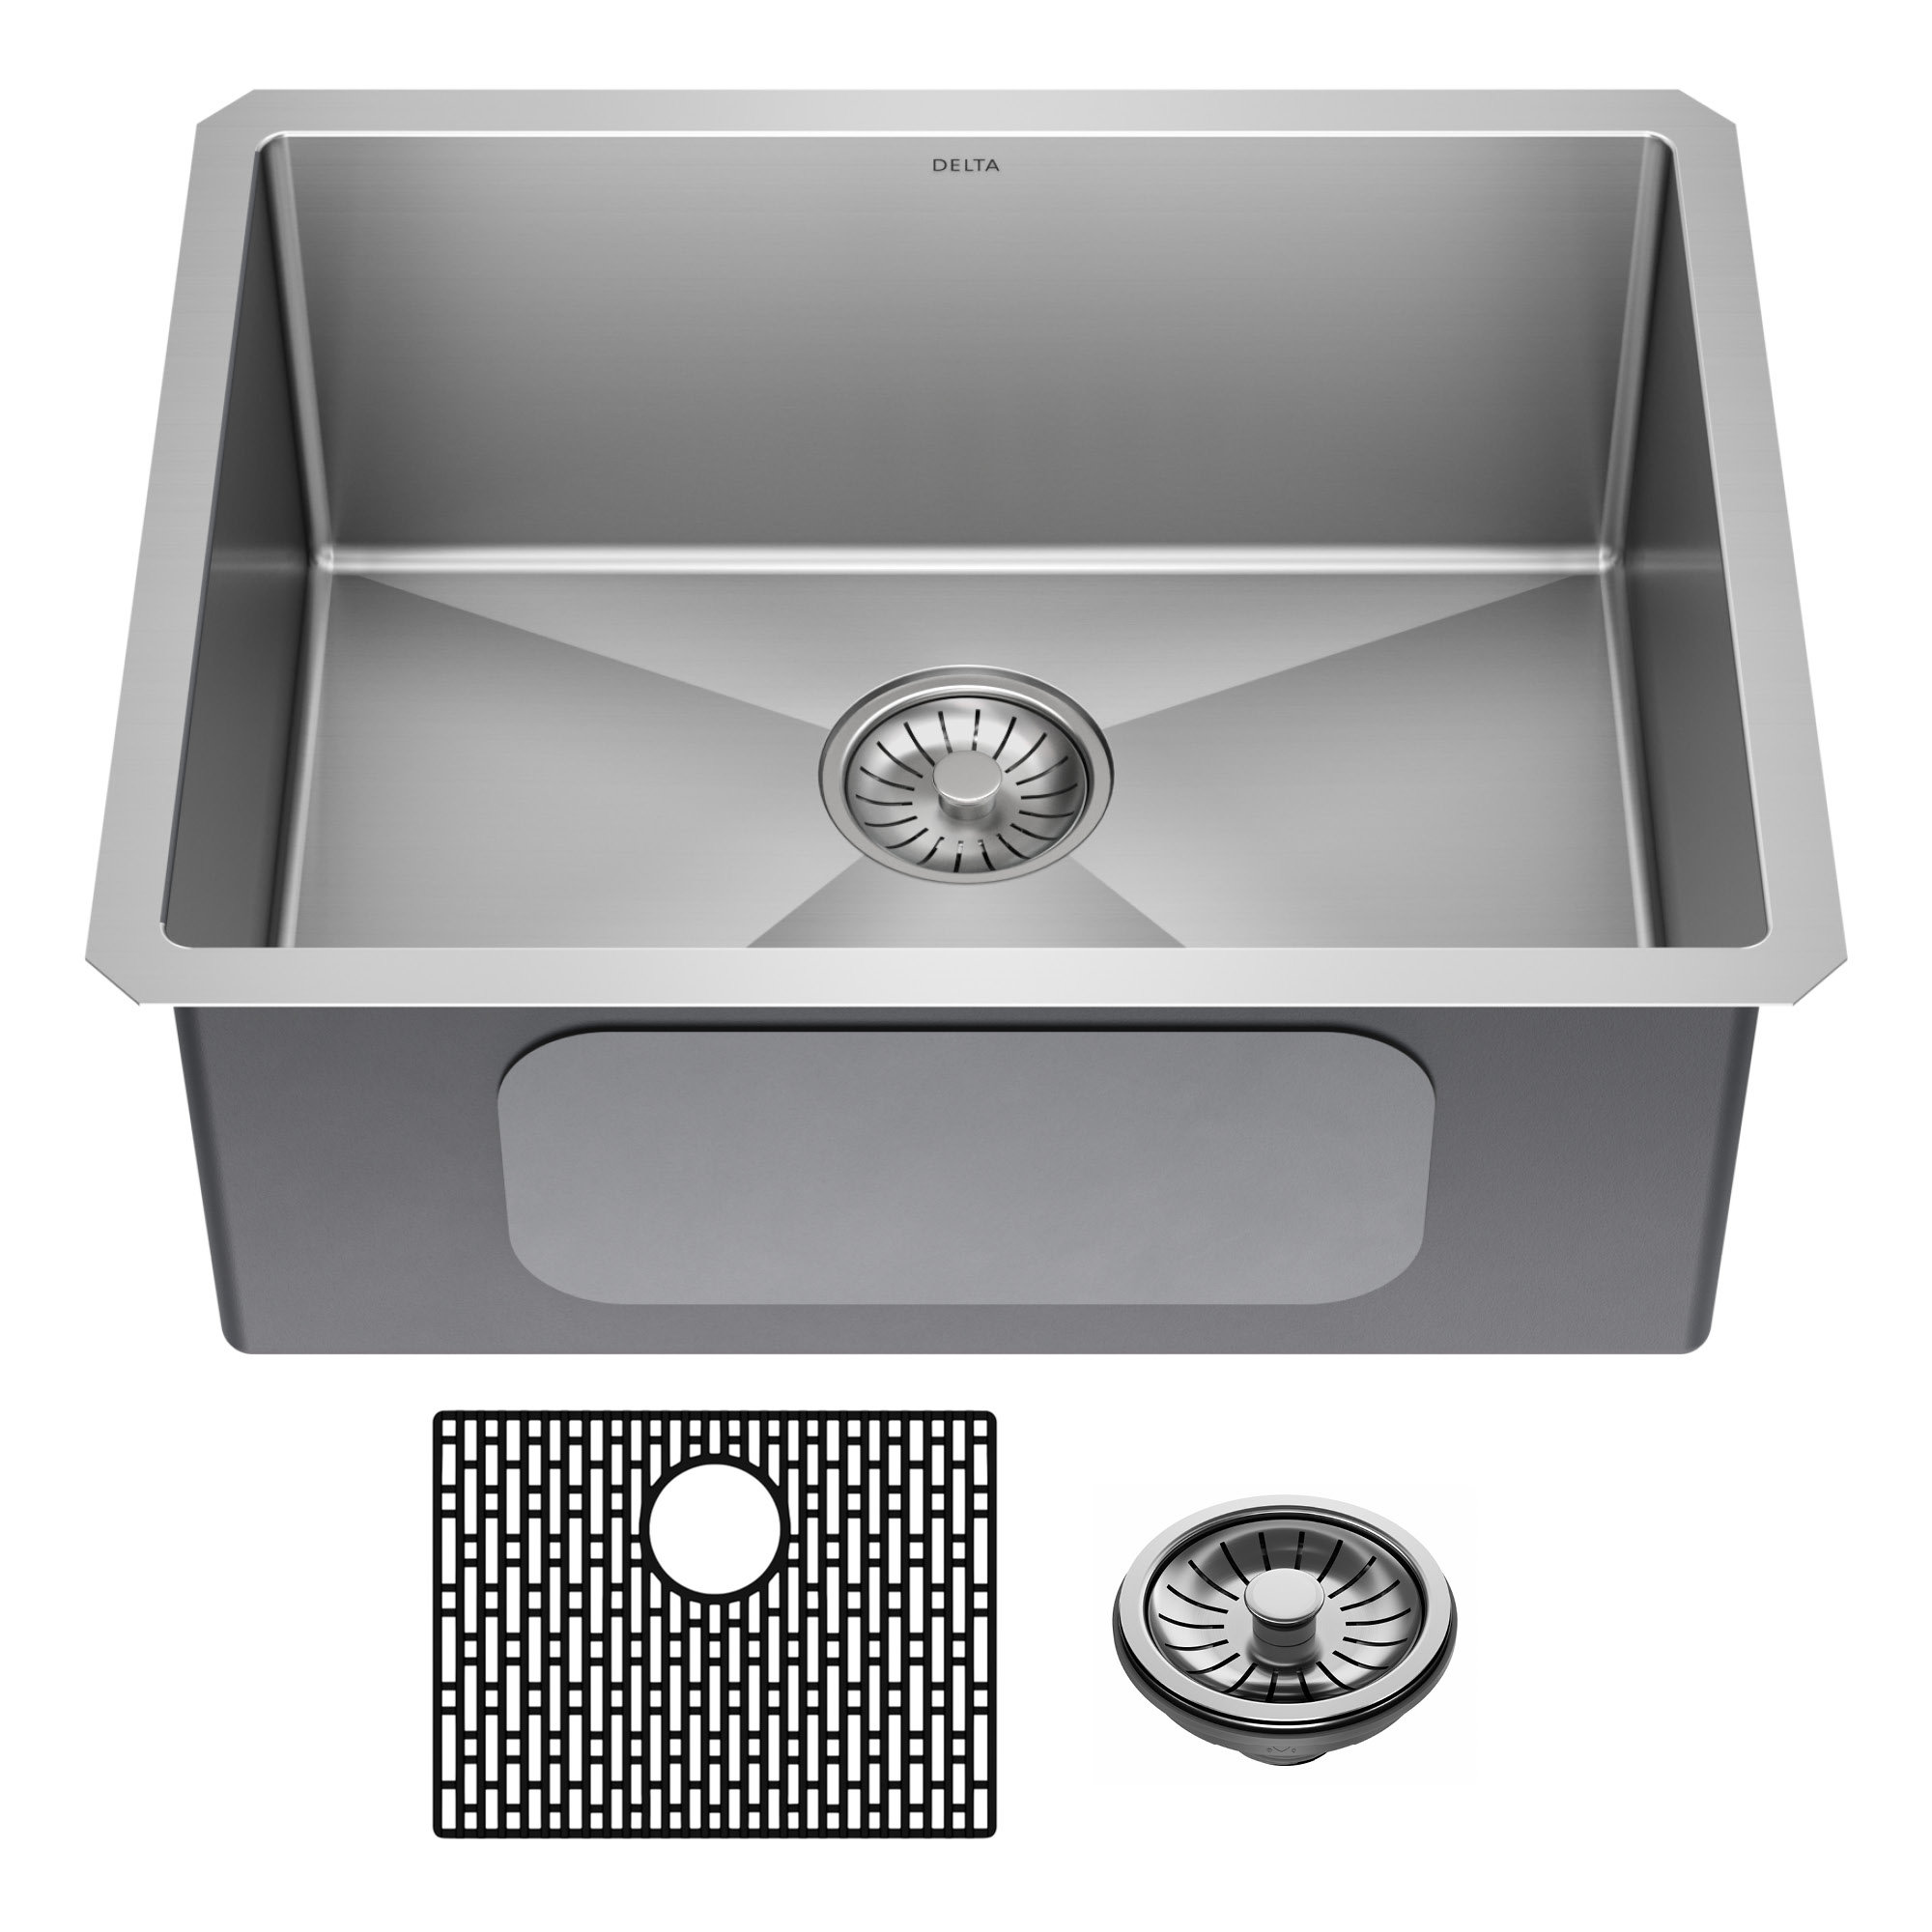 https://assets.wfcdn.com/im/09984986/compr-r85/2159/215919188/delta-lenta-undermount-16-gauge-stainless-steel-single-bowl-kitchen-sink-with-accessories.jpg